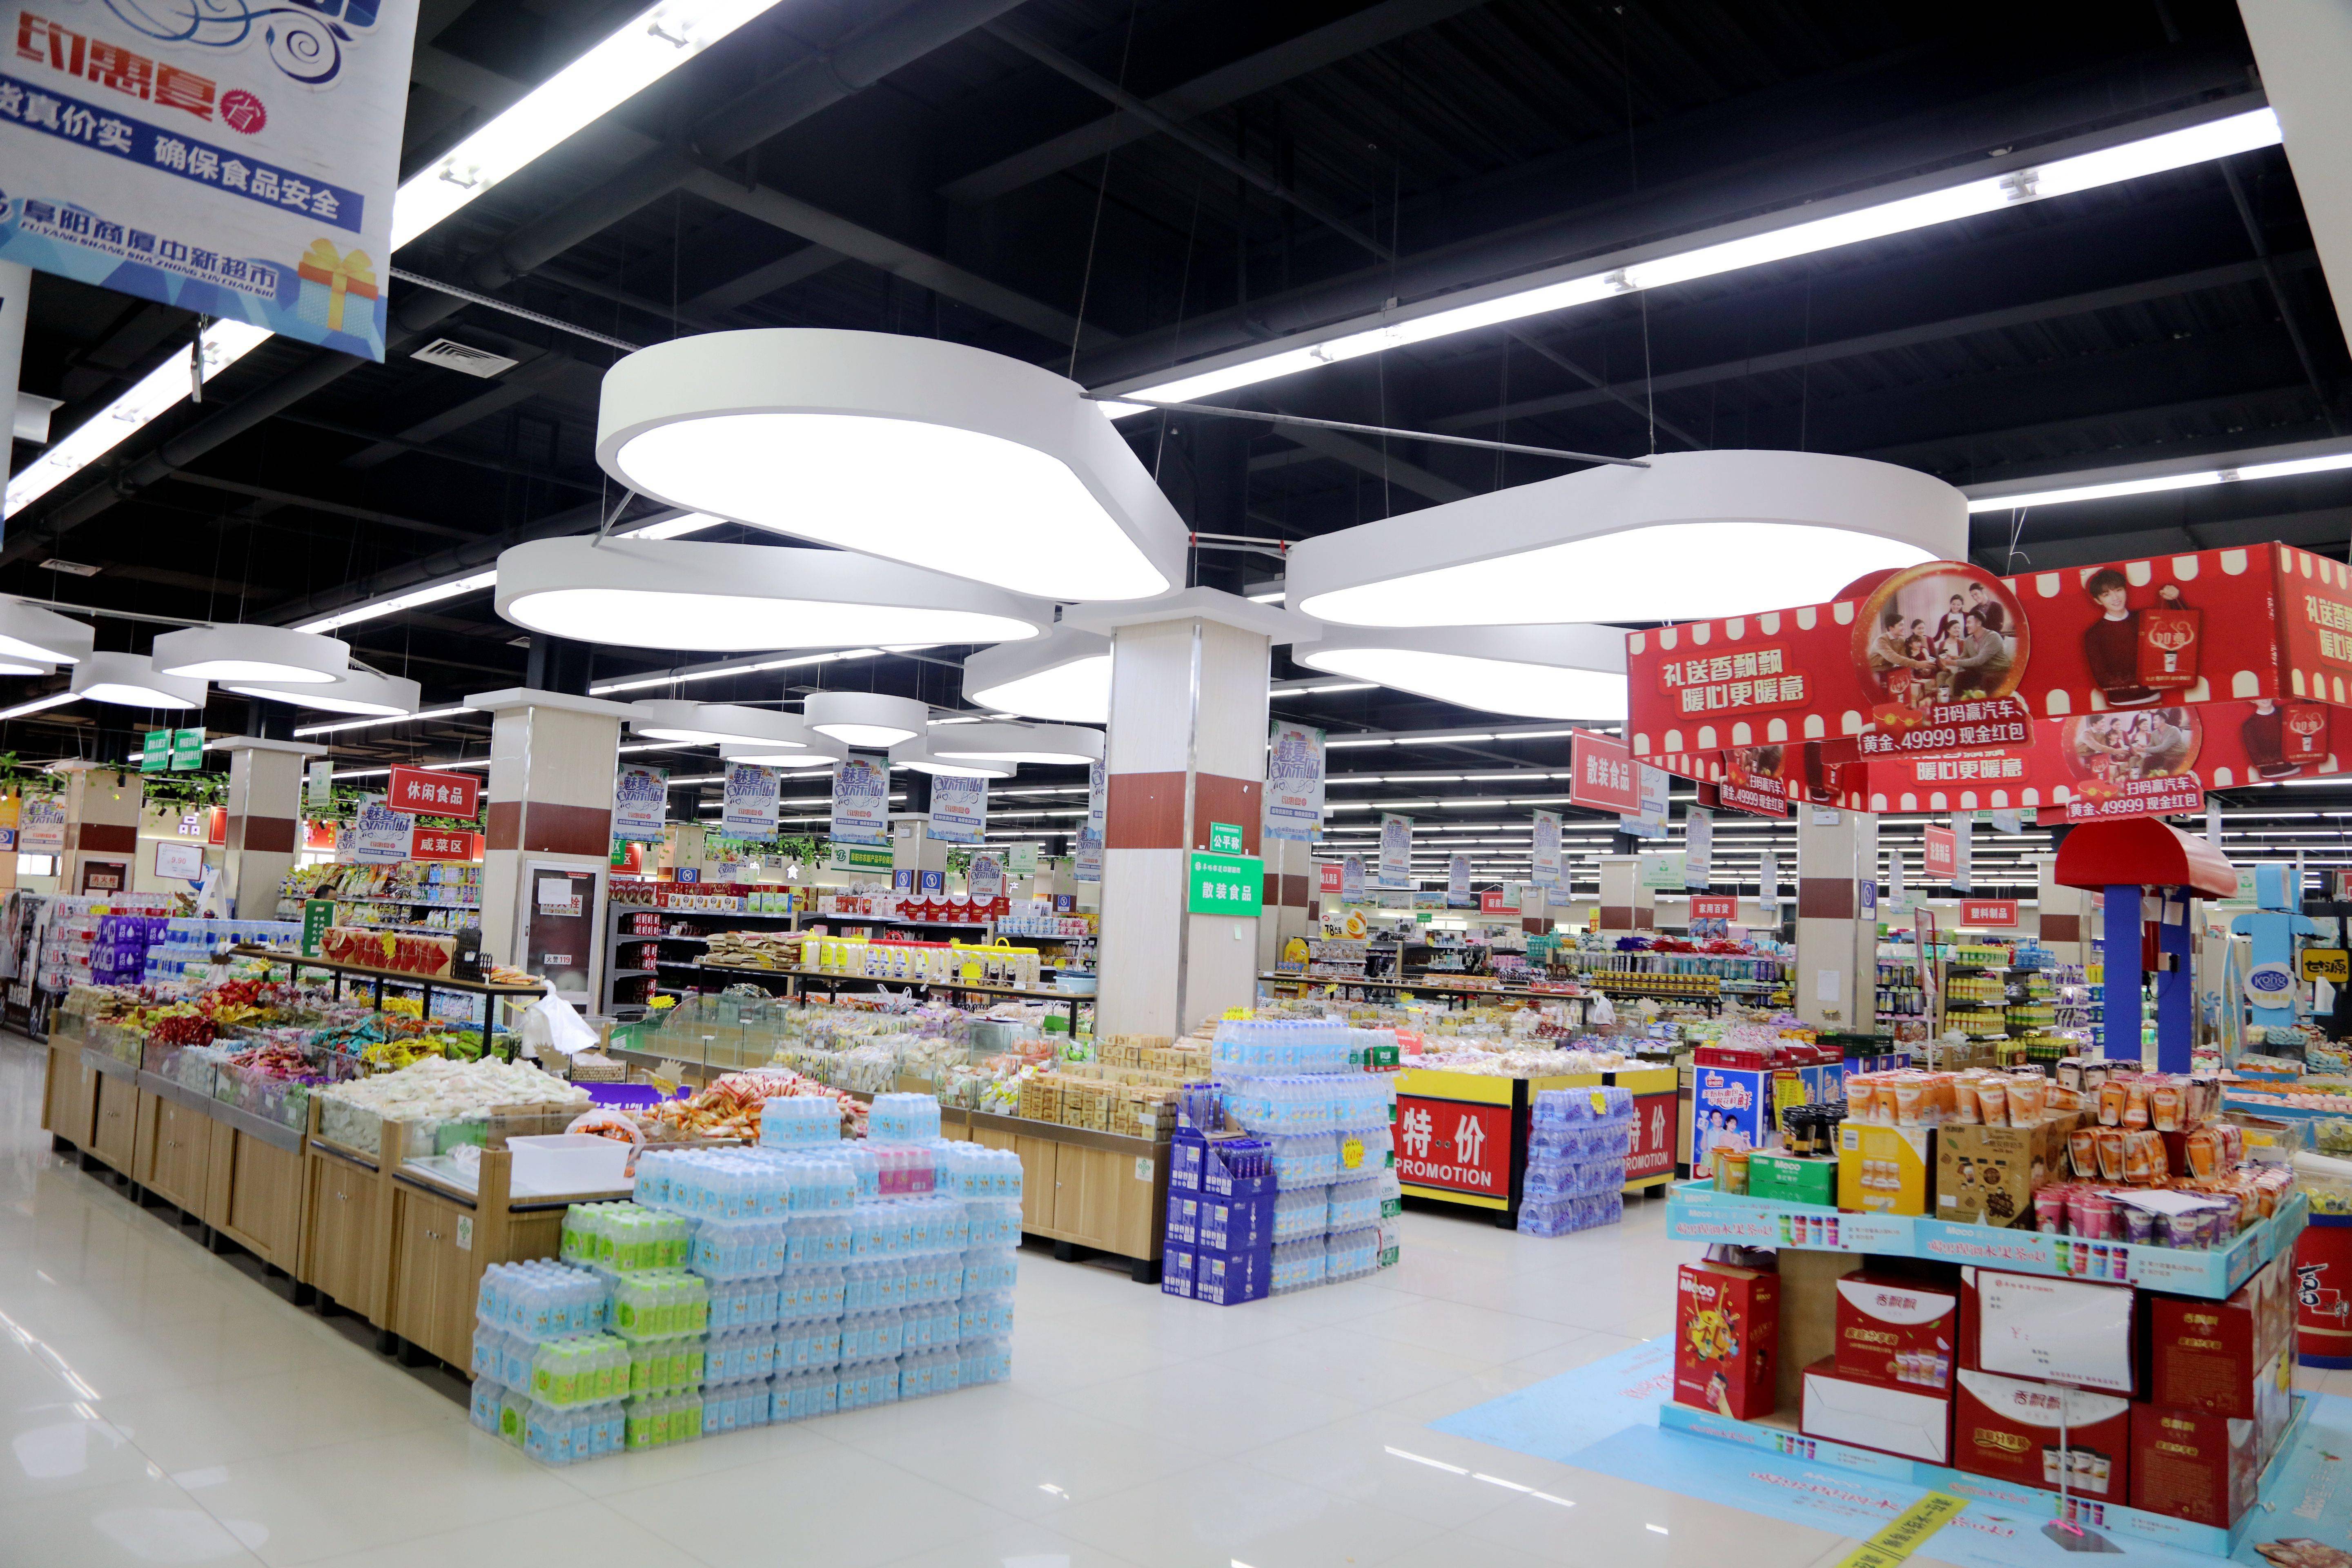 系统重装升级改造阜阳商厦中心超市进入快速发展新时期